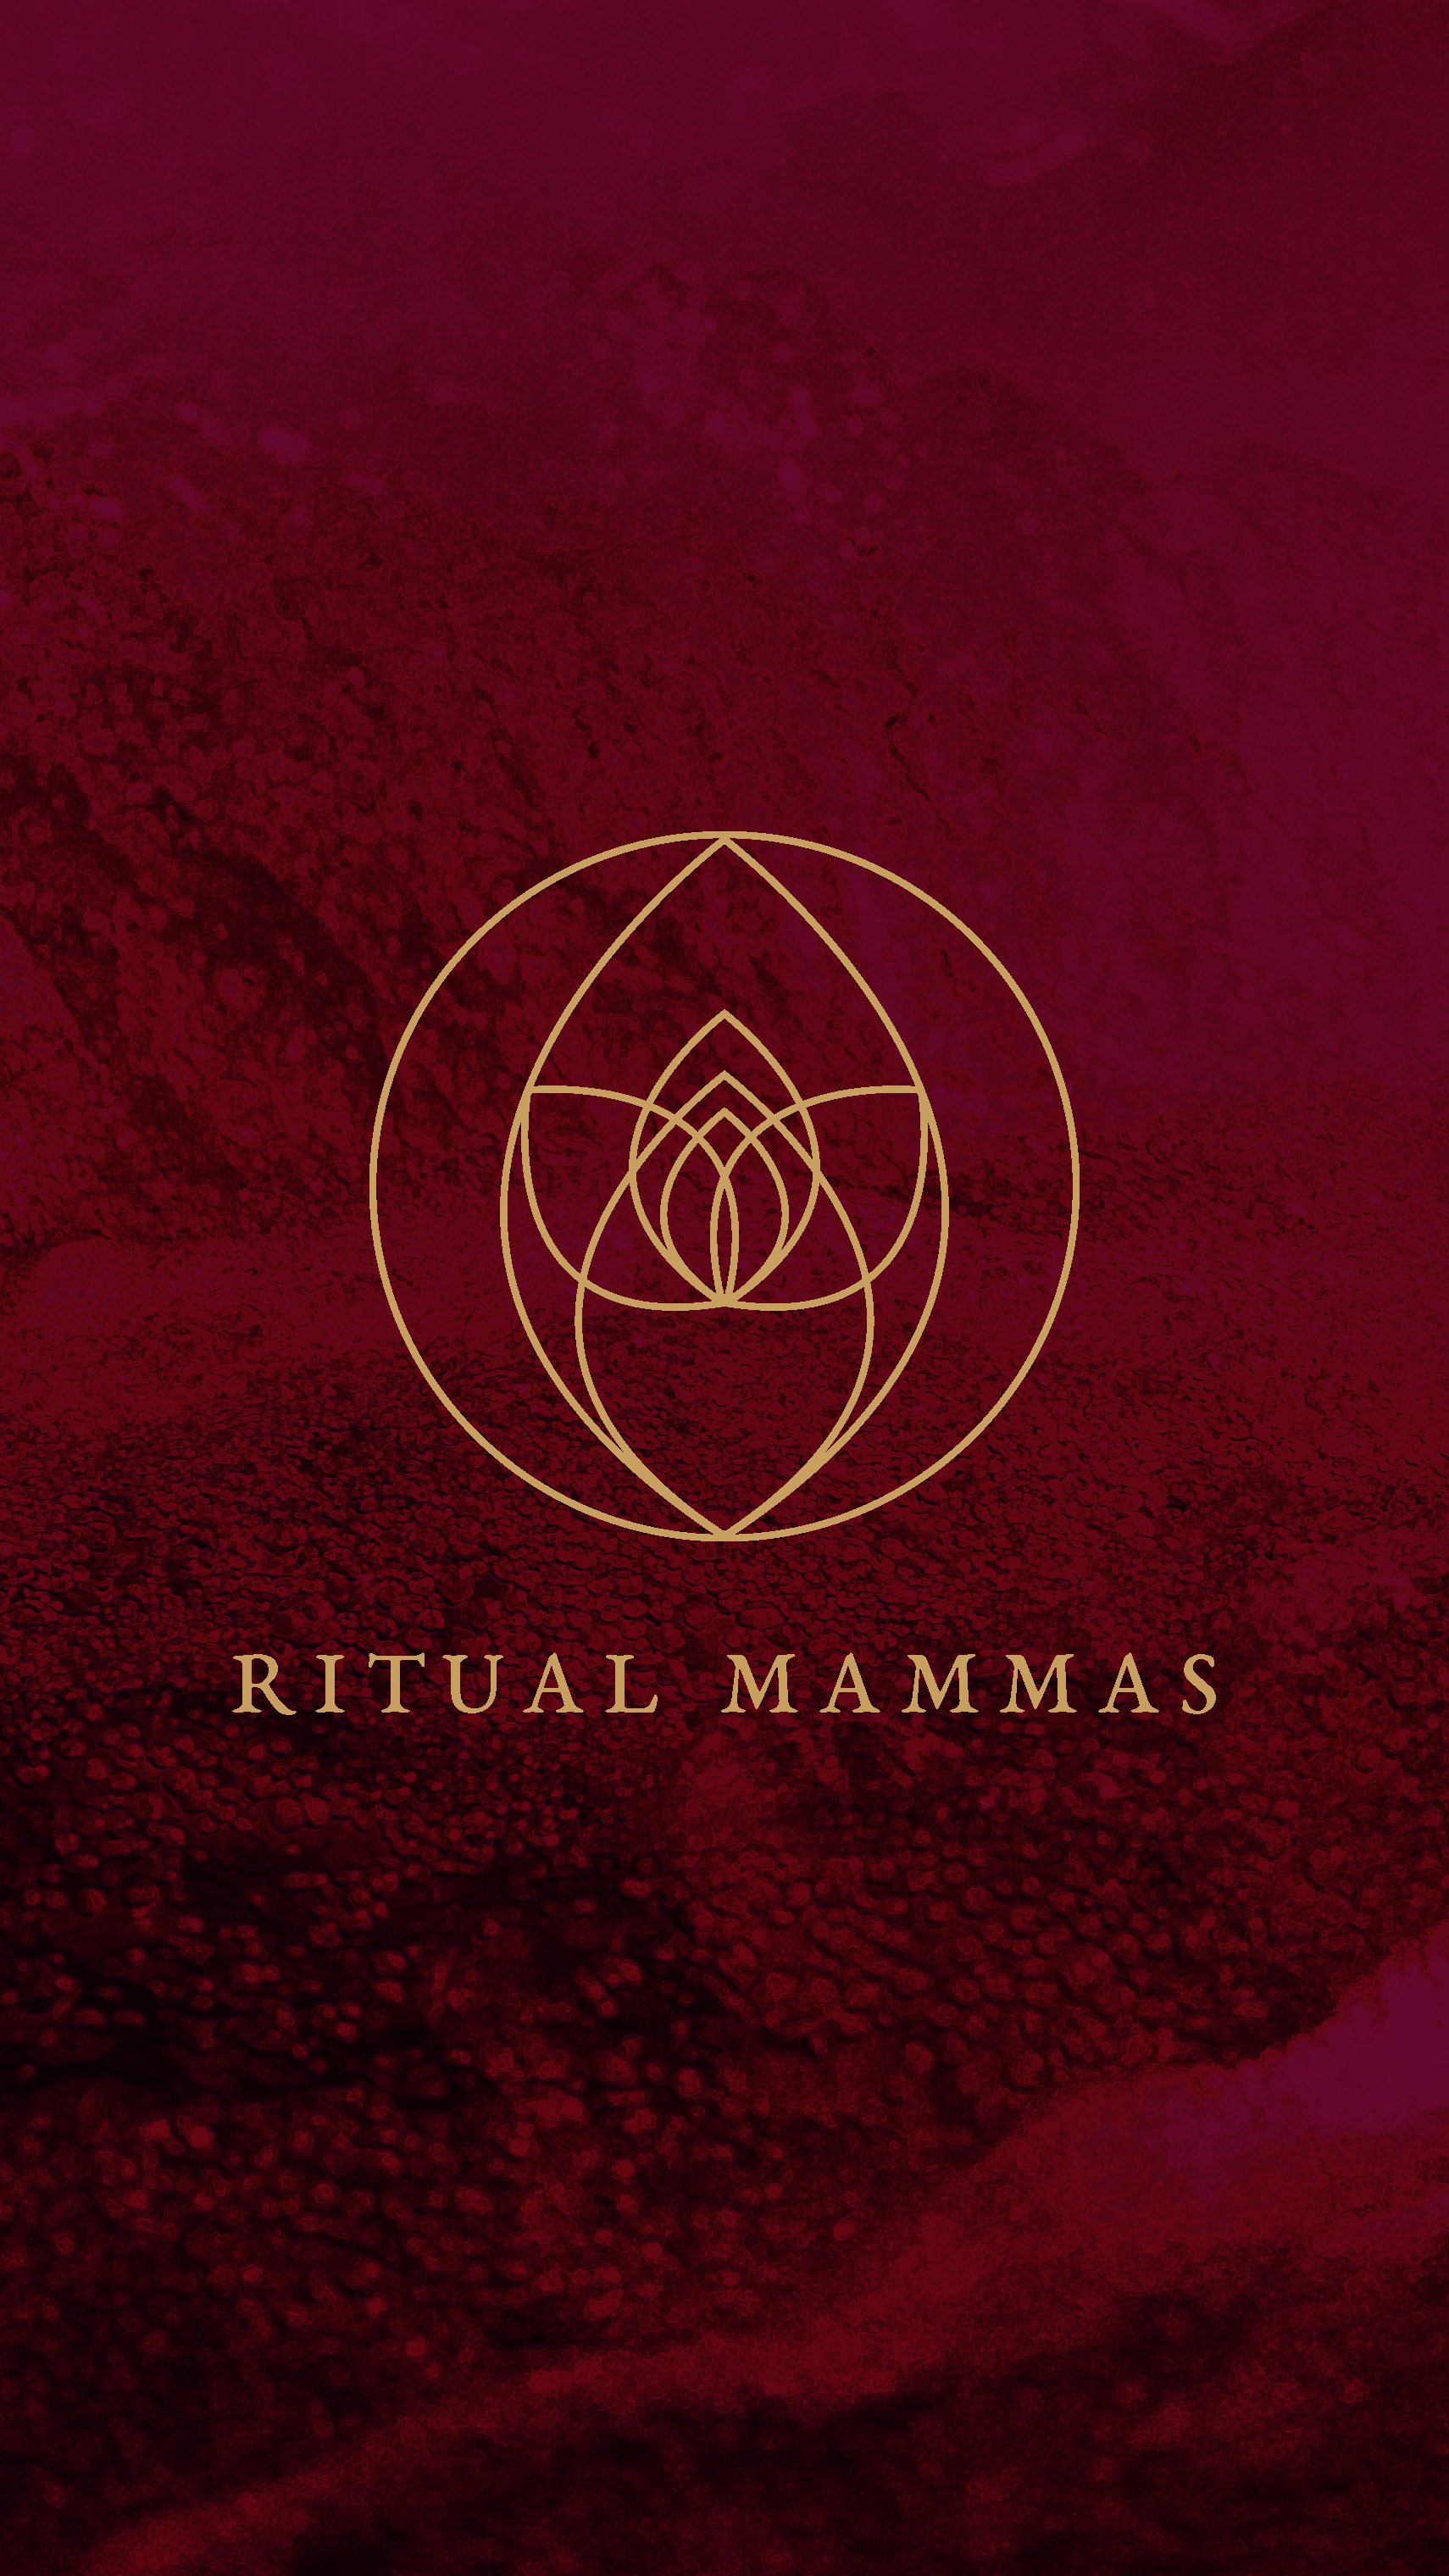 Ritual Mammas Logo Design